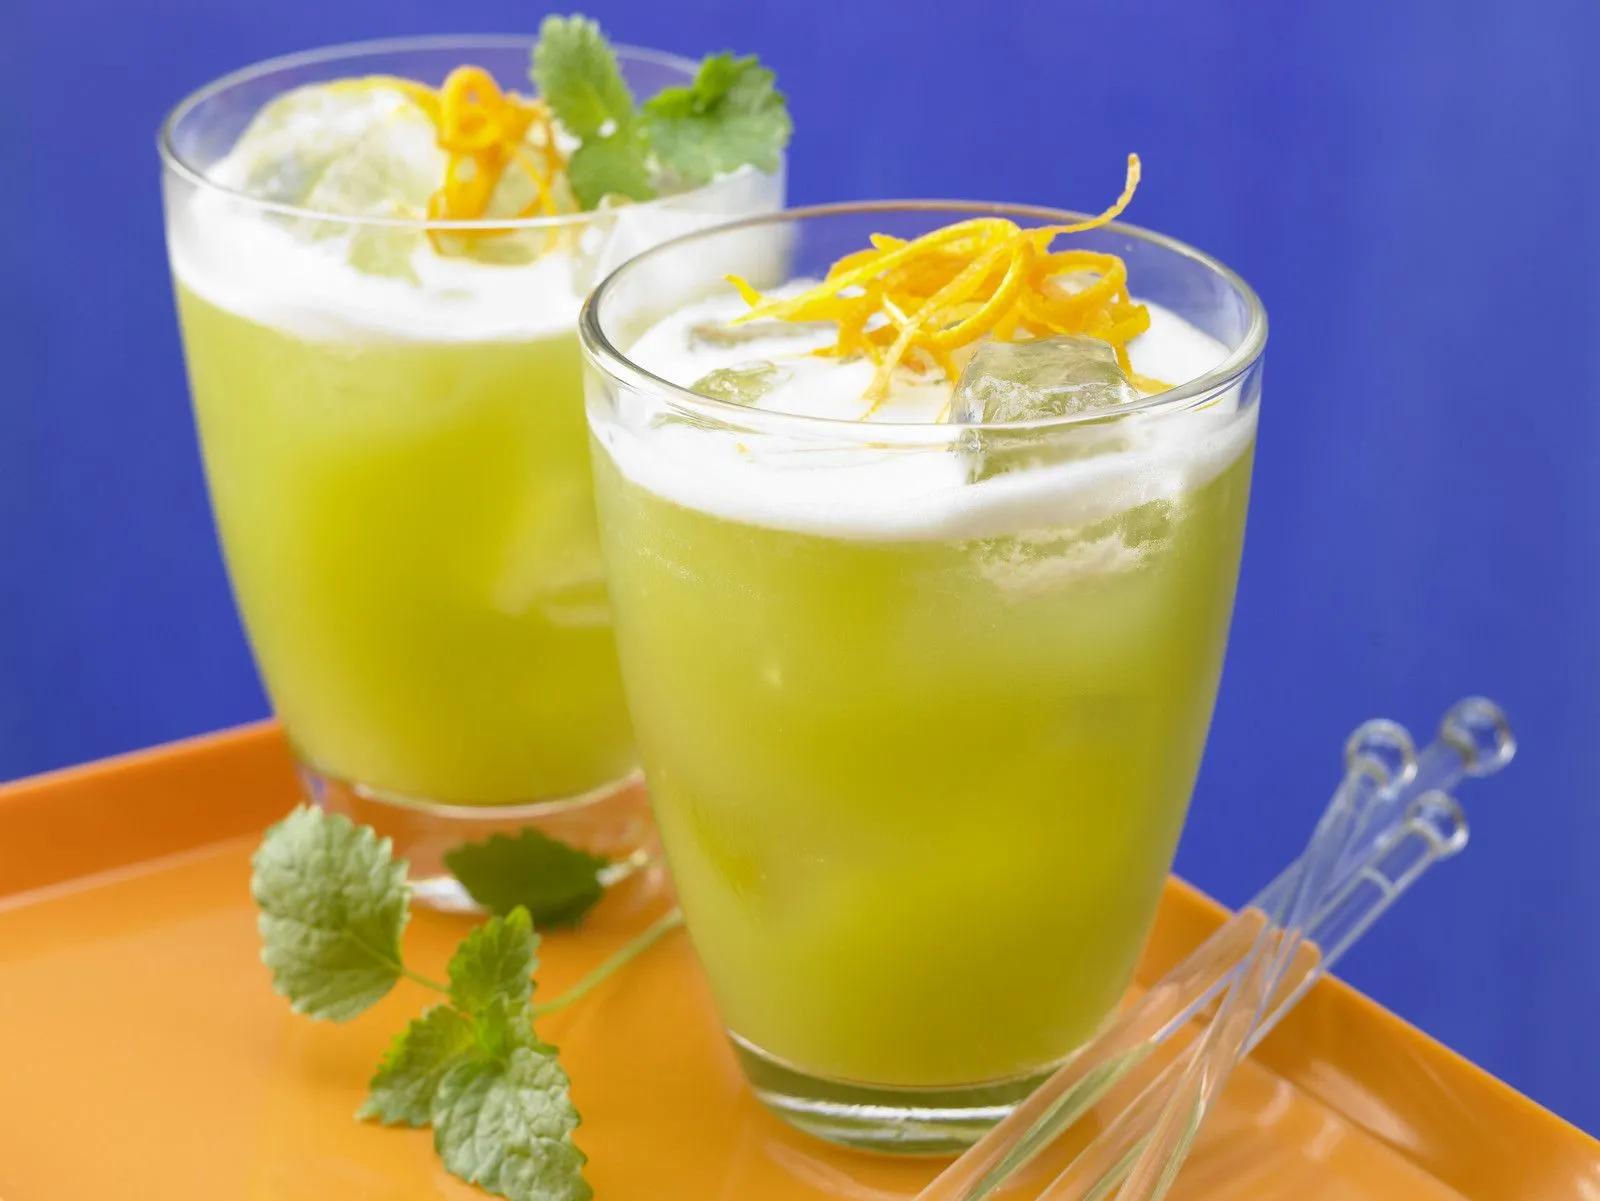 Spargel-Melonen-Cocktail | Rezept | Essen und trinken, Melonen, Spargel